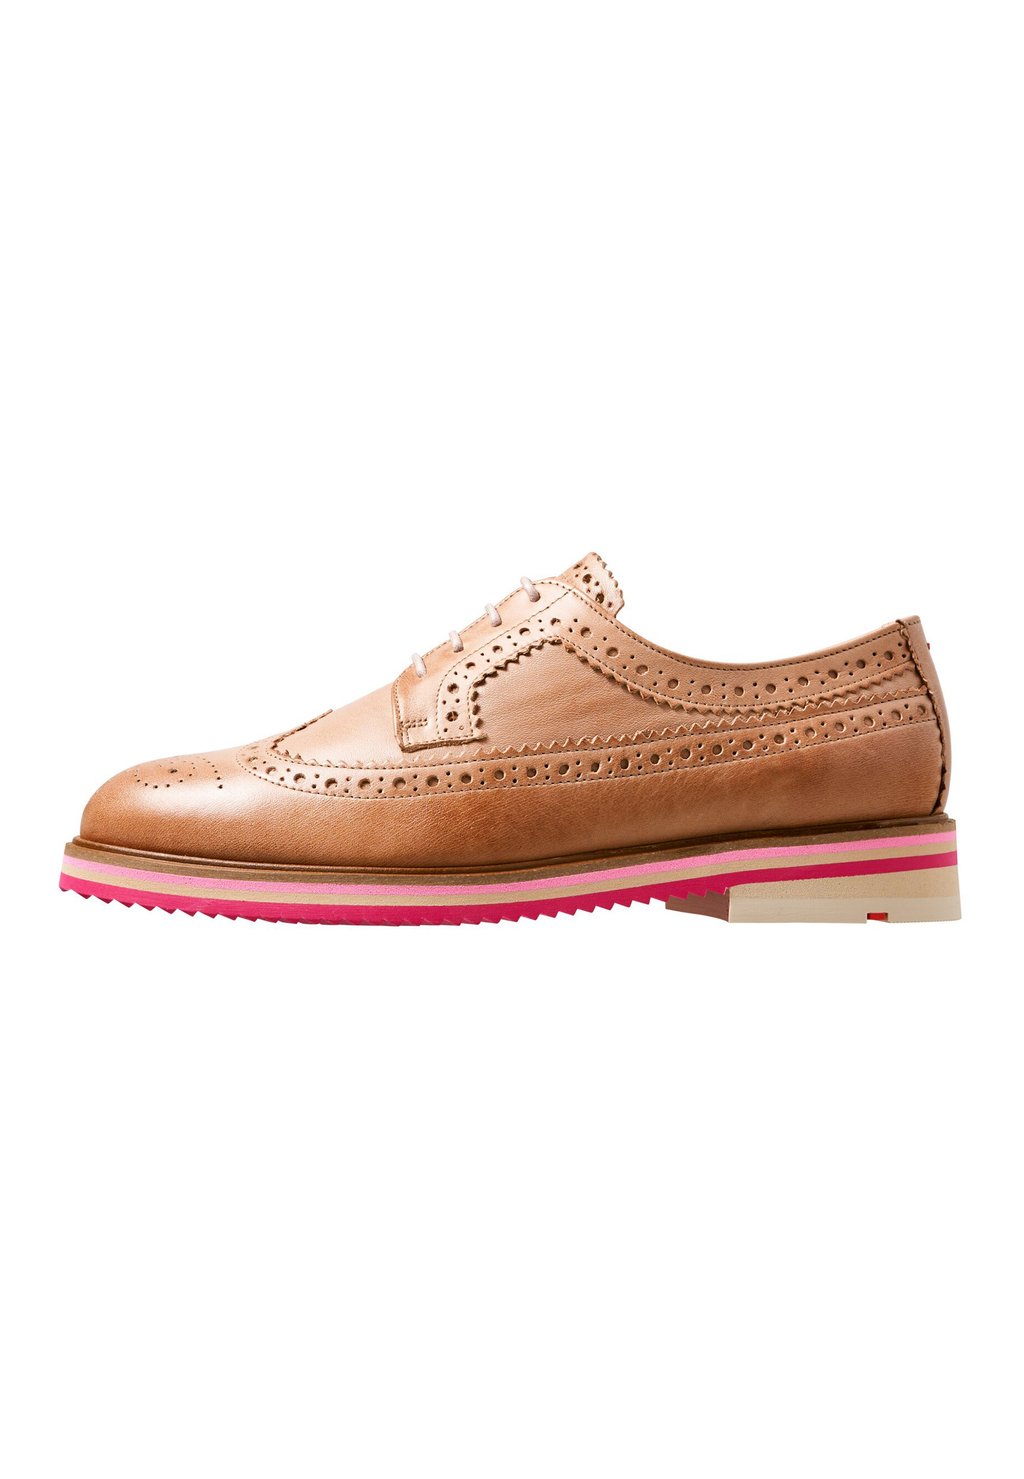 Деловые туфли на шнуровке Lloyd, цвет braun деловые туфли на шнуровке mare lloyd цвет braun